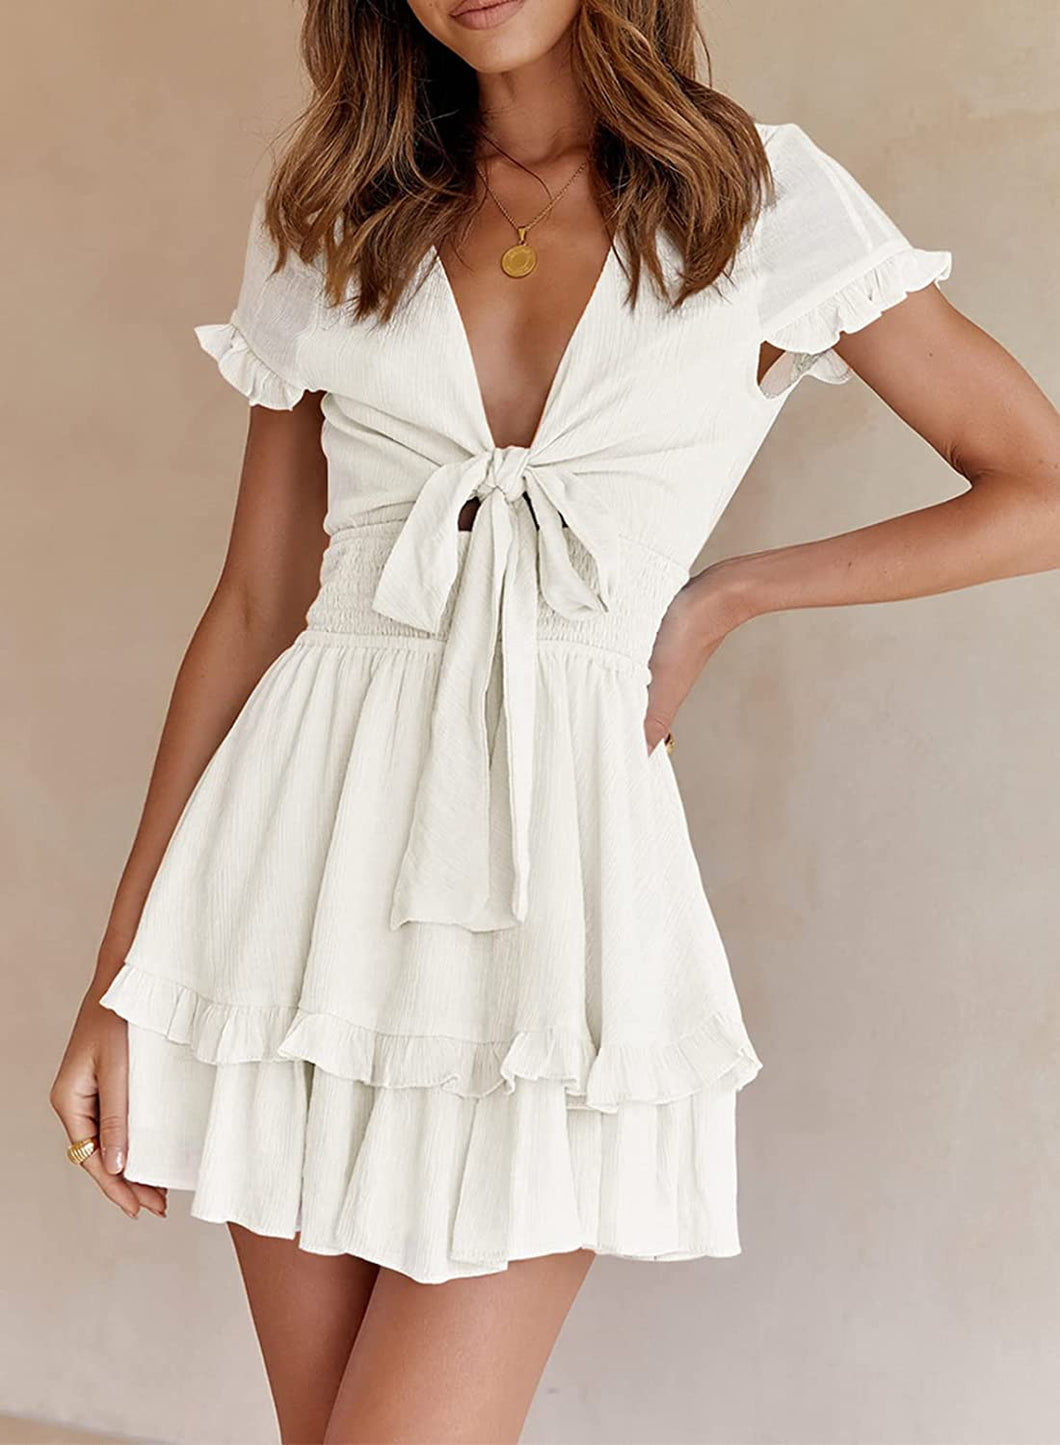 Summer Knot Front White Short Sleeve Mini Swing Dress